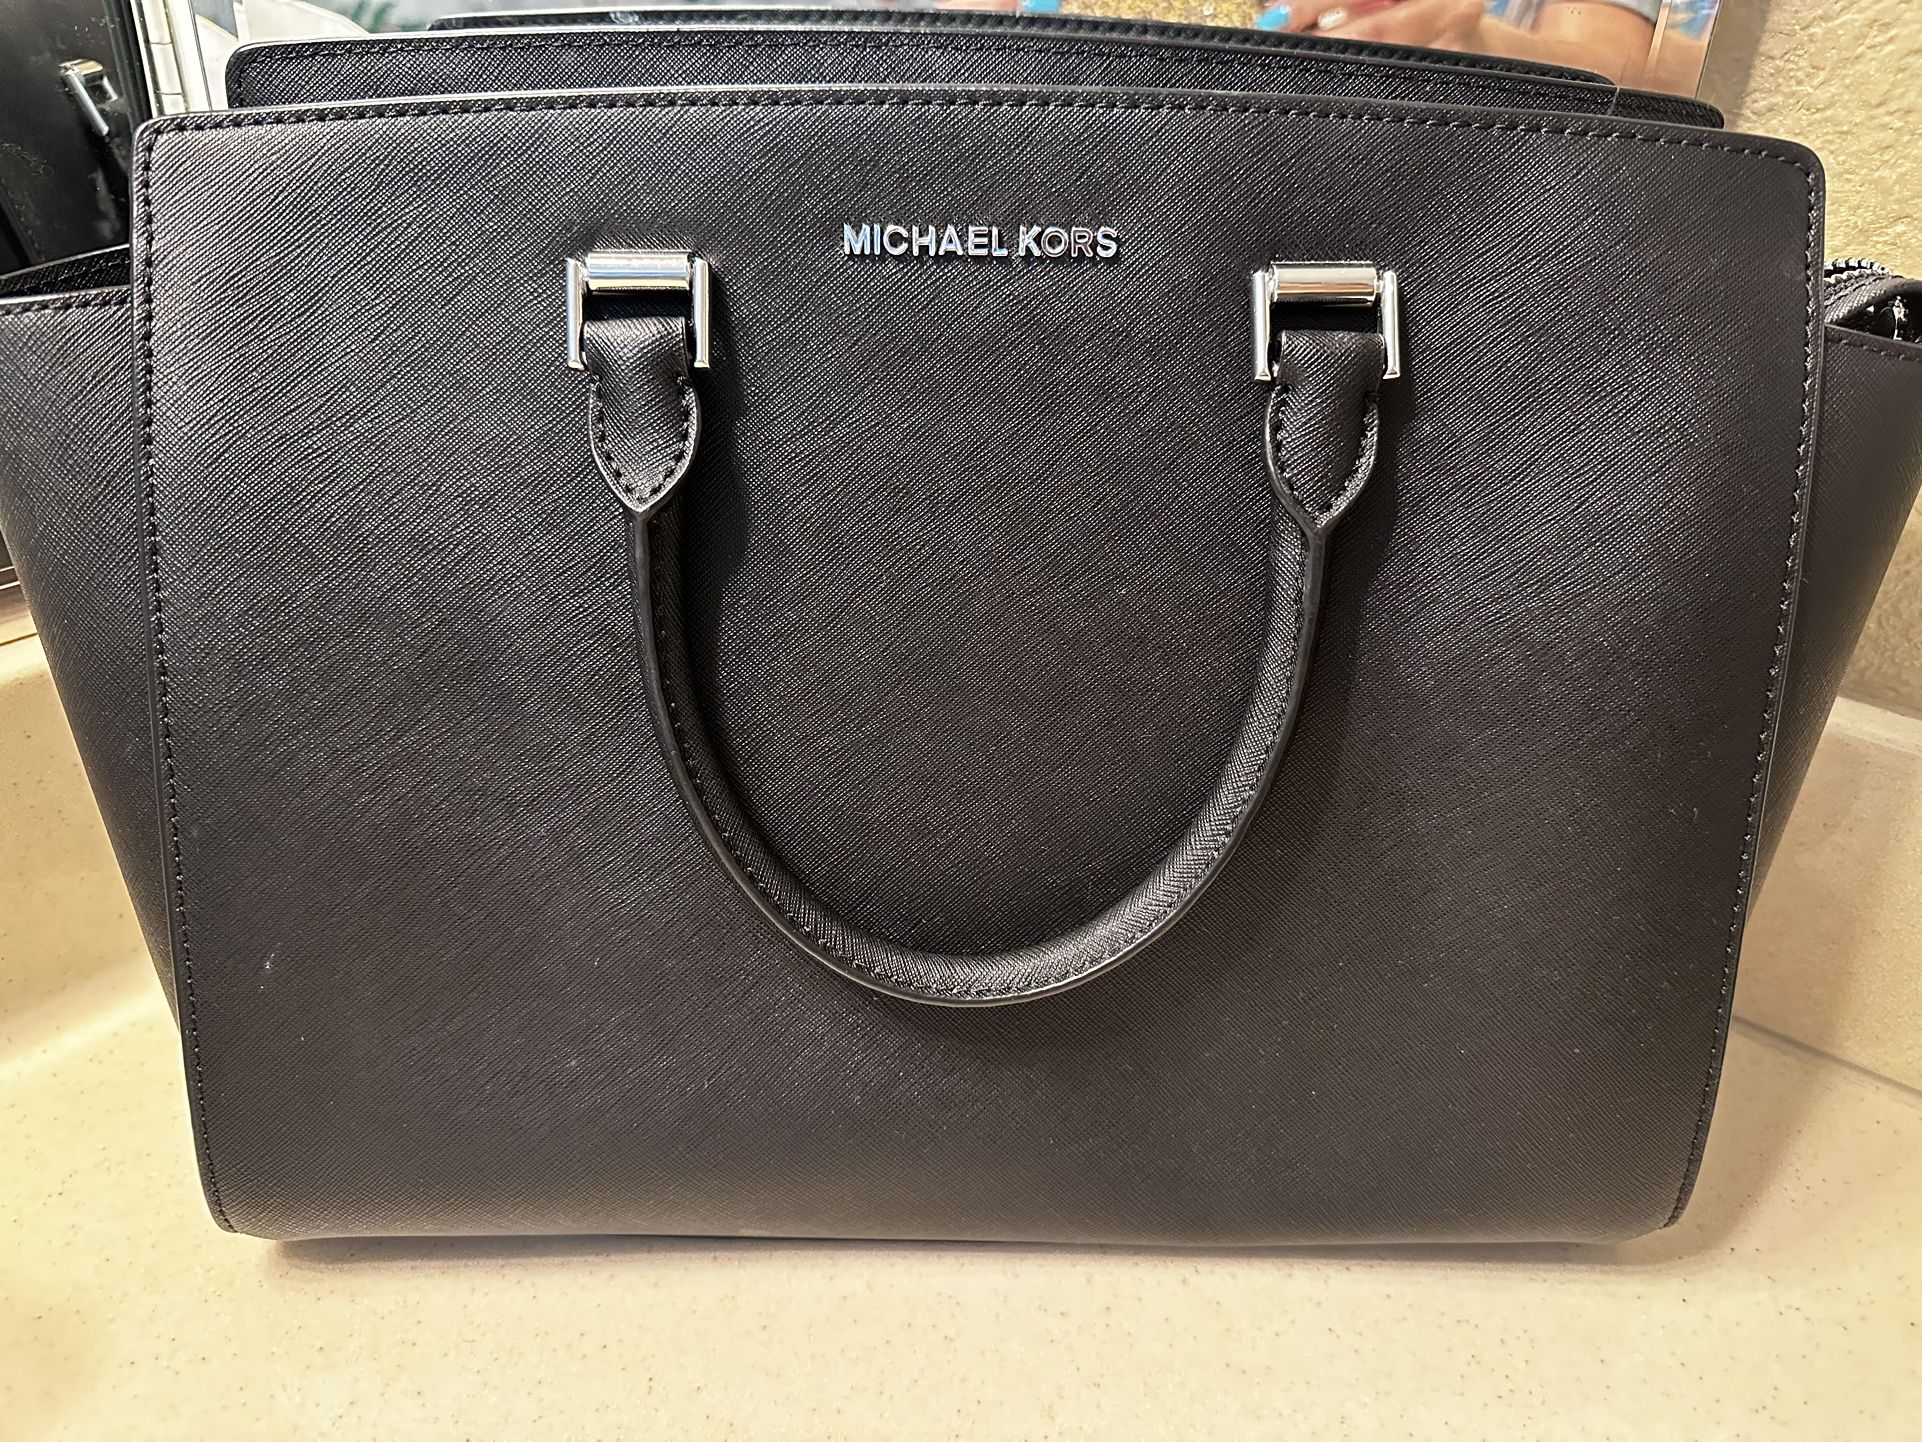 Michael Kors Selma Black Handbag Large NWOT